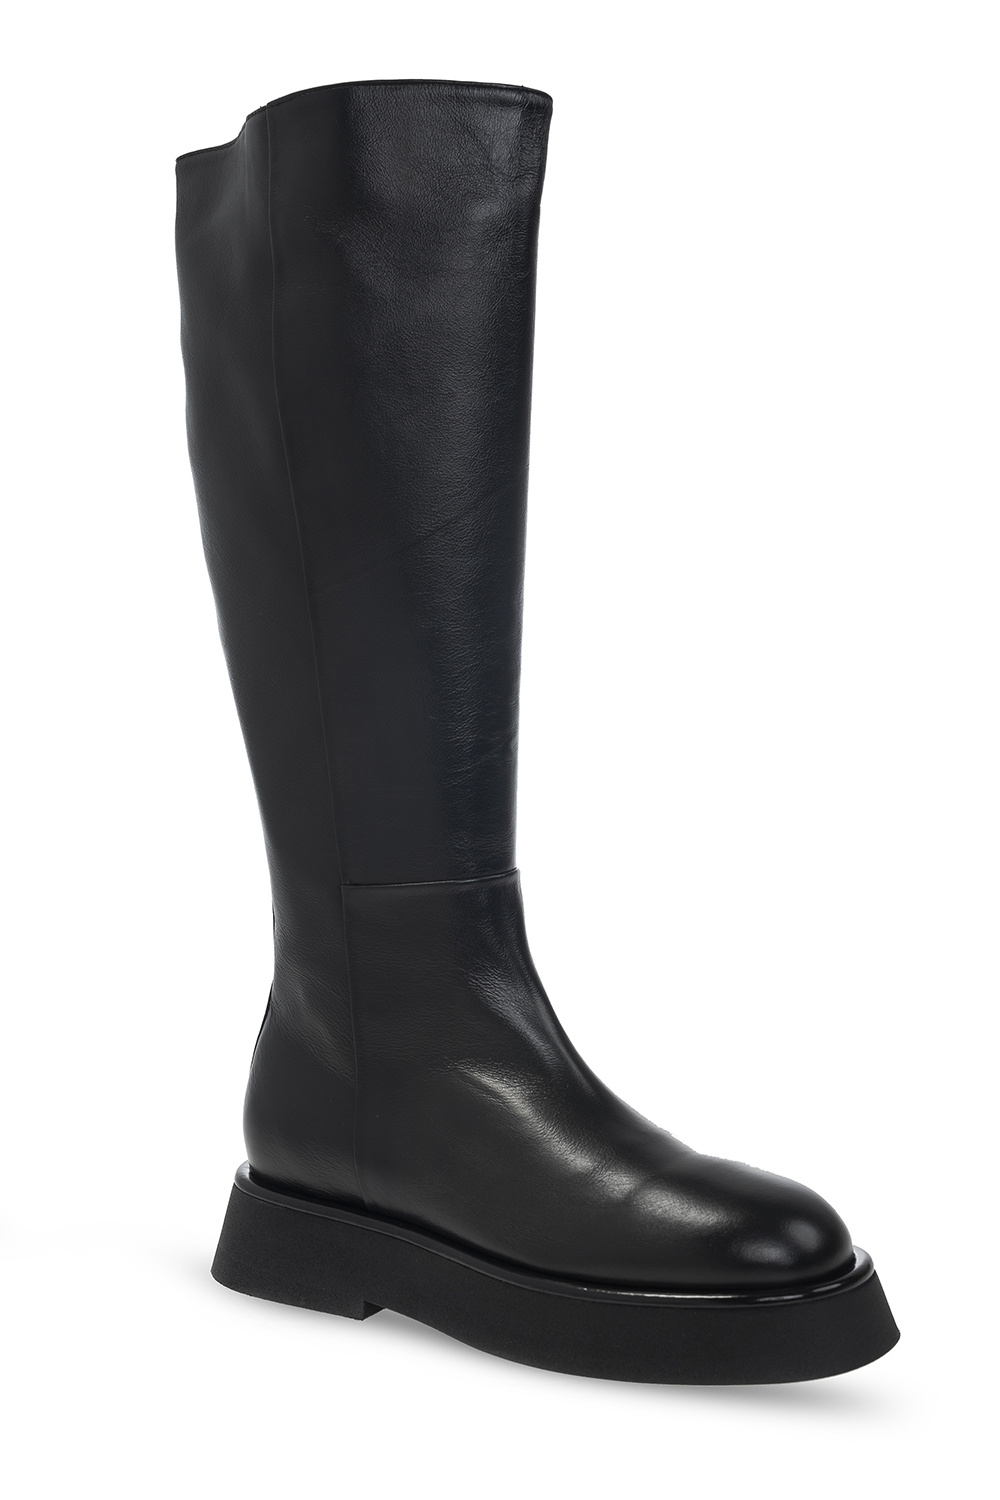 Wandler ‘Rosa Long’ knee-high boots